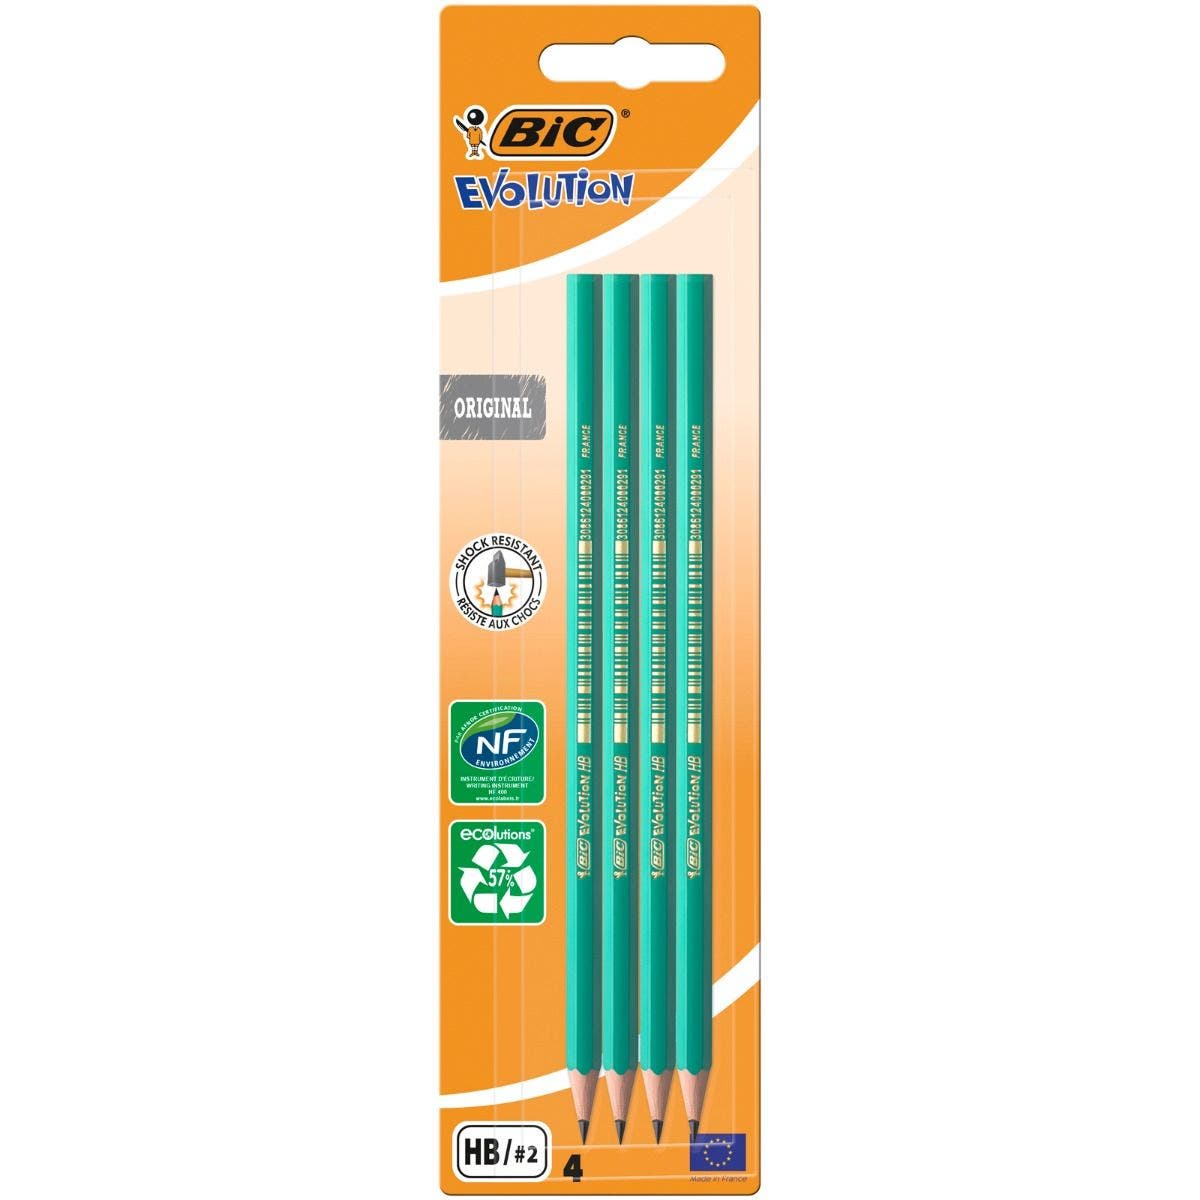 12 crayons bois HB sans gomme Evolution Bic, le lot - Porte mines